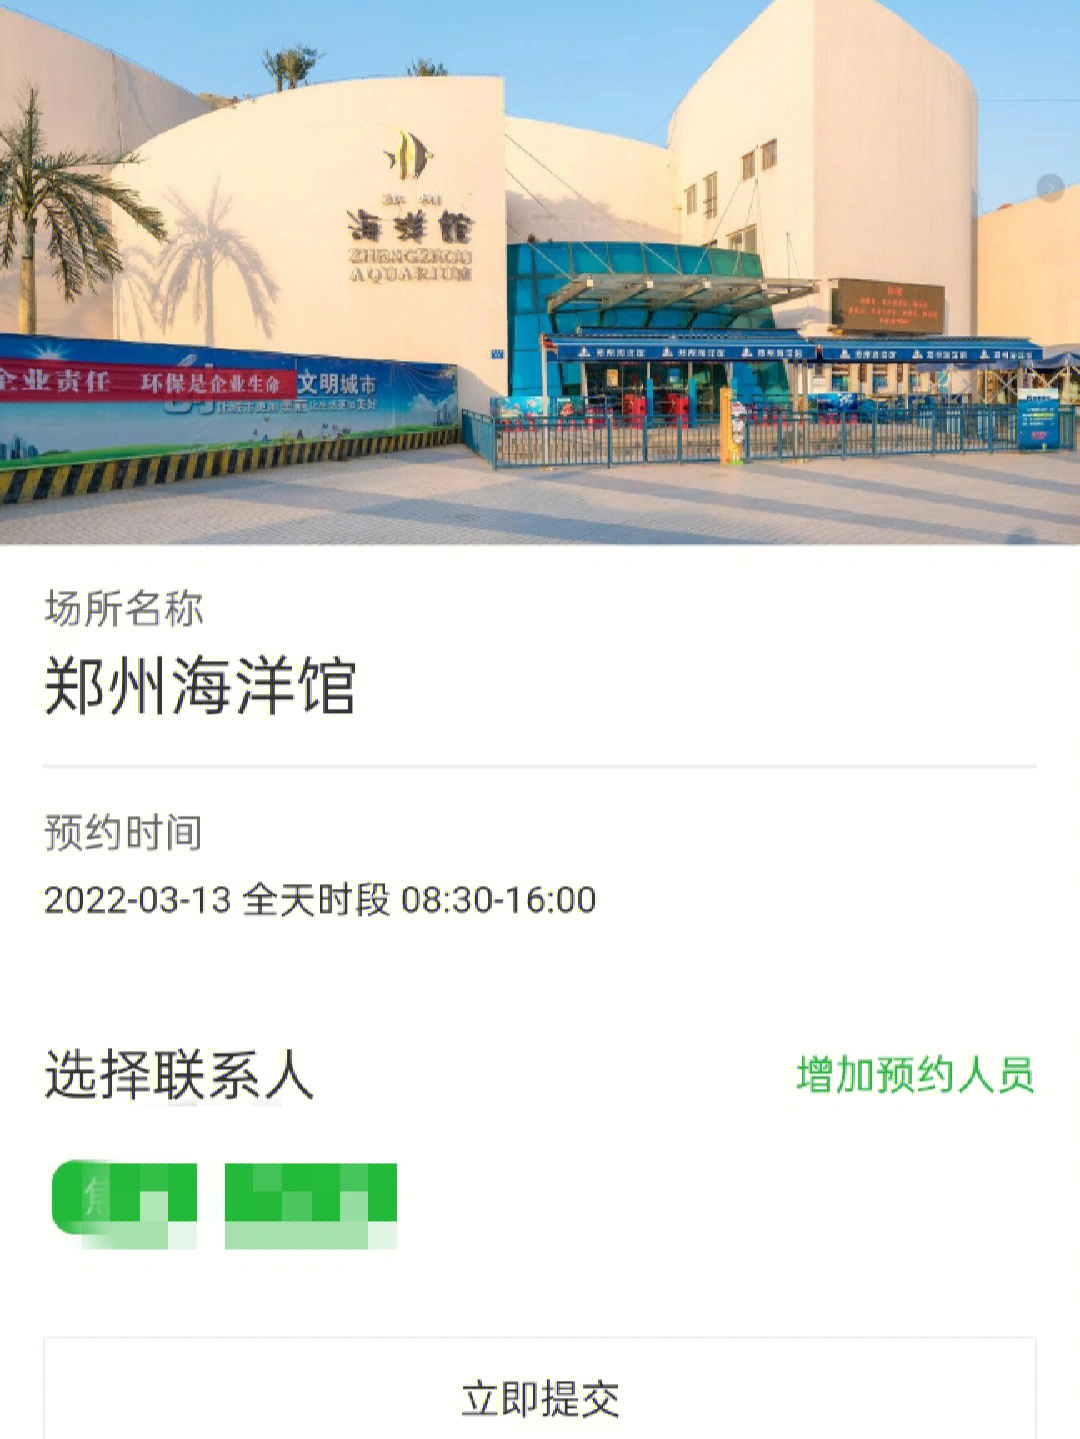 郑州海洋馆路线图片